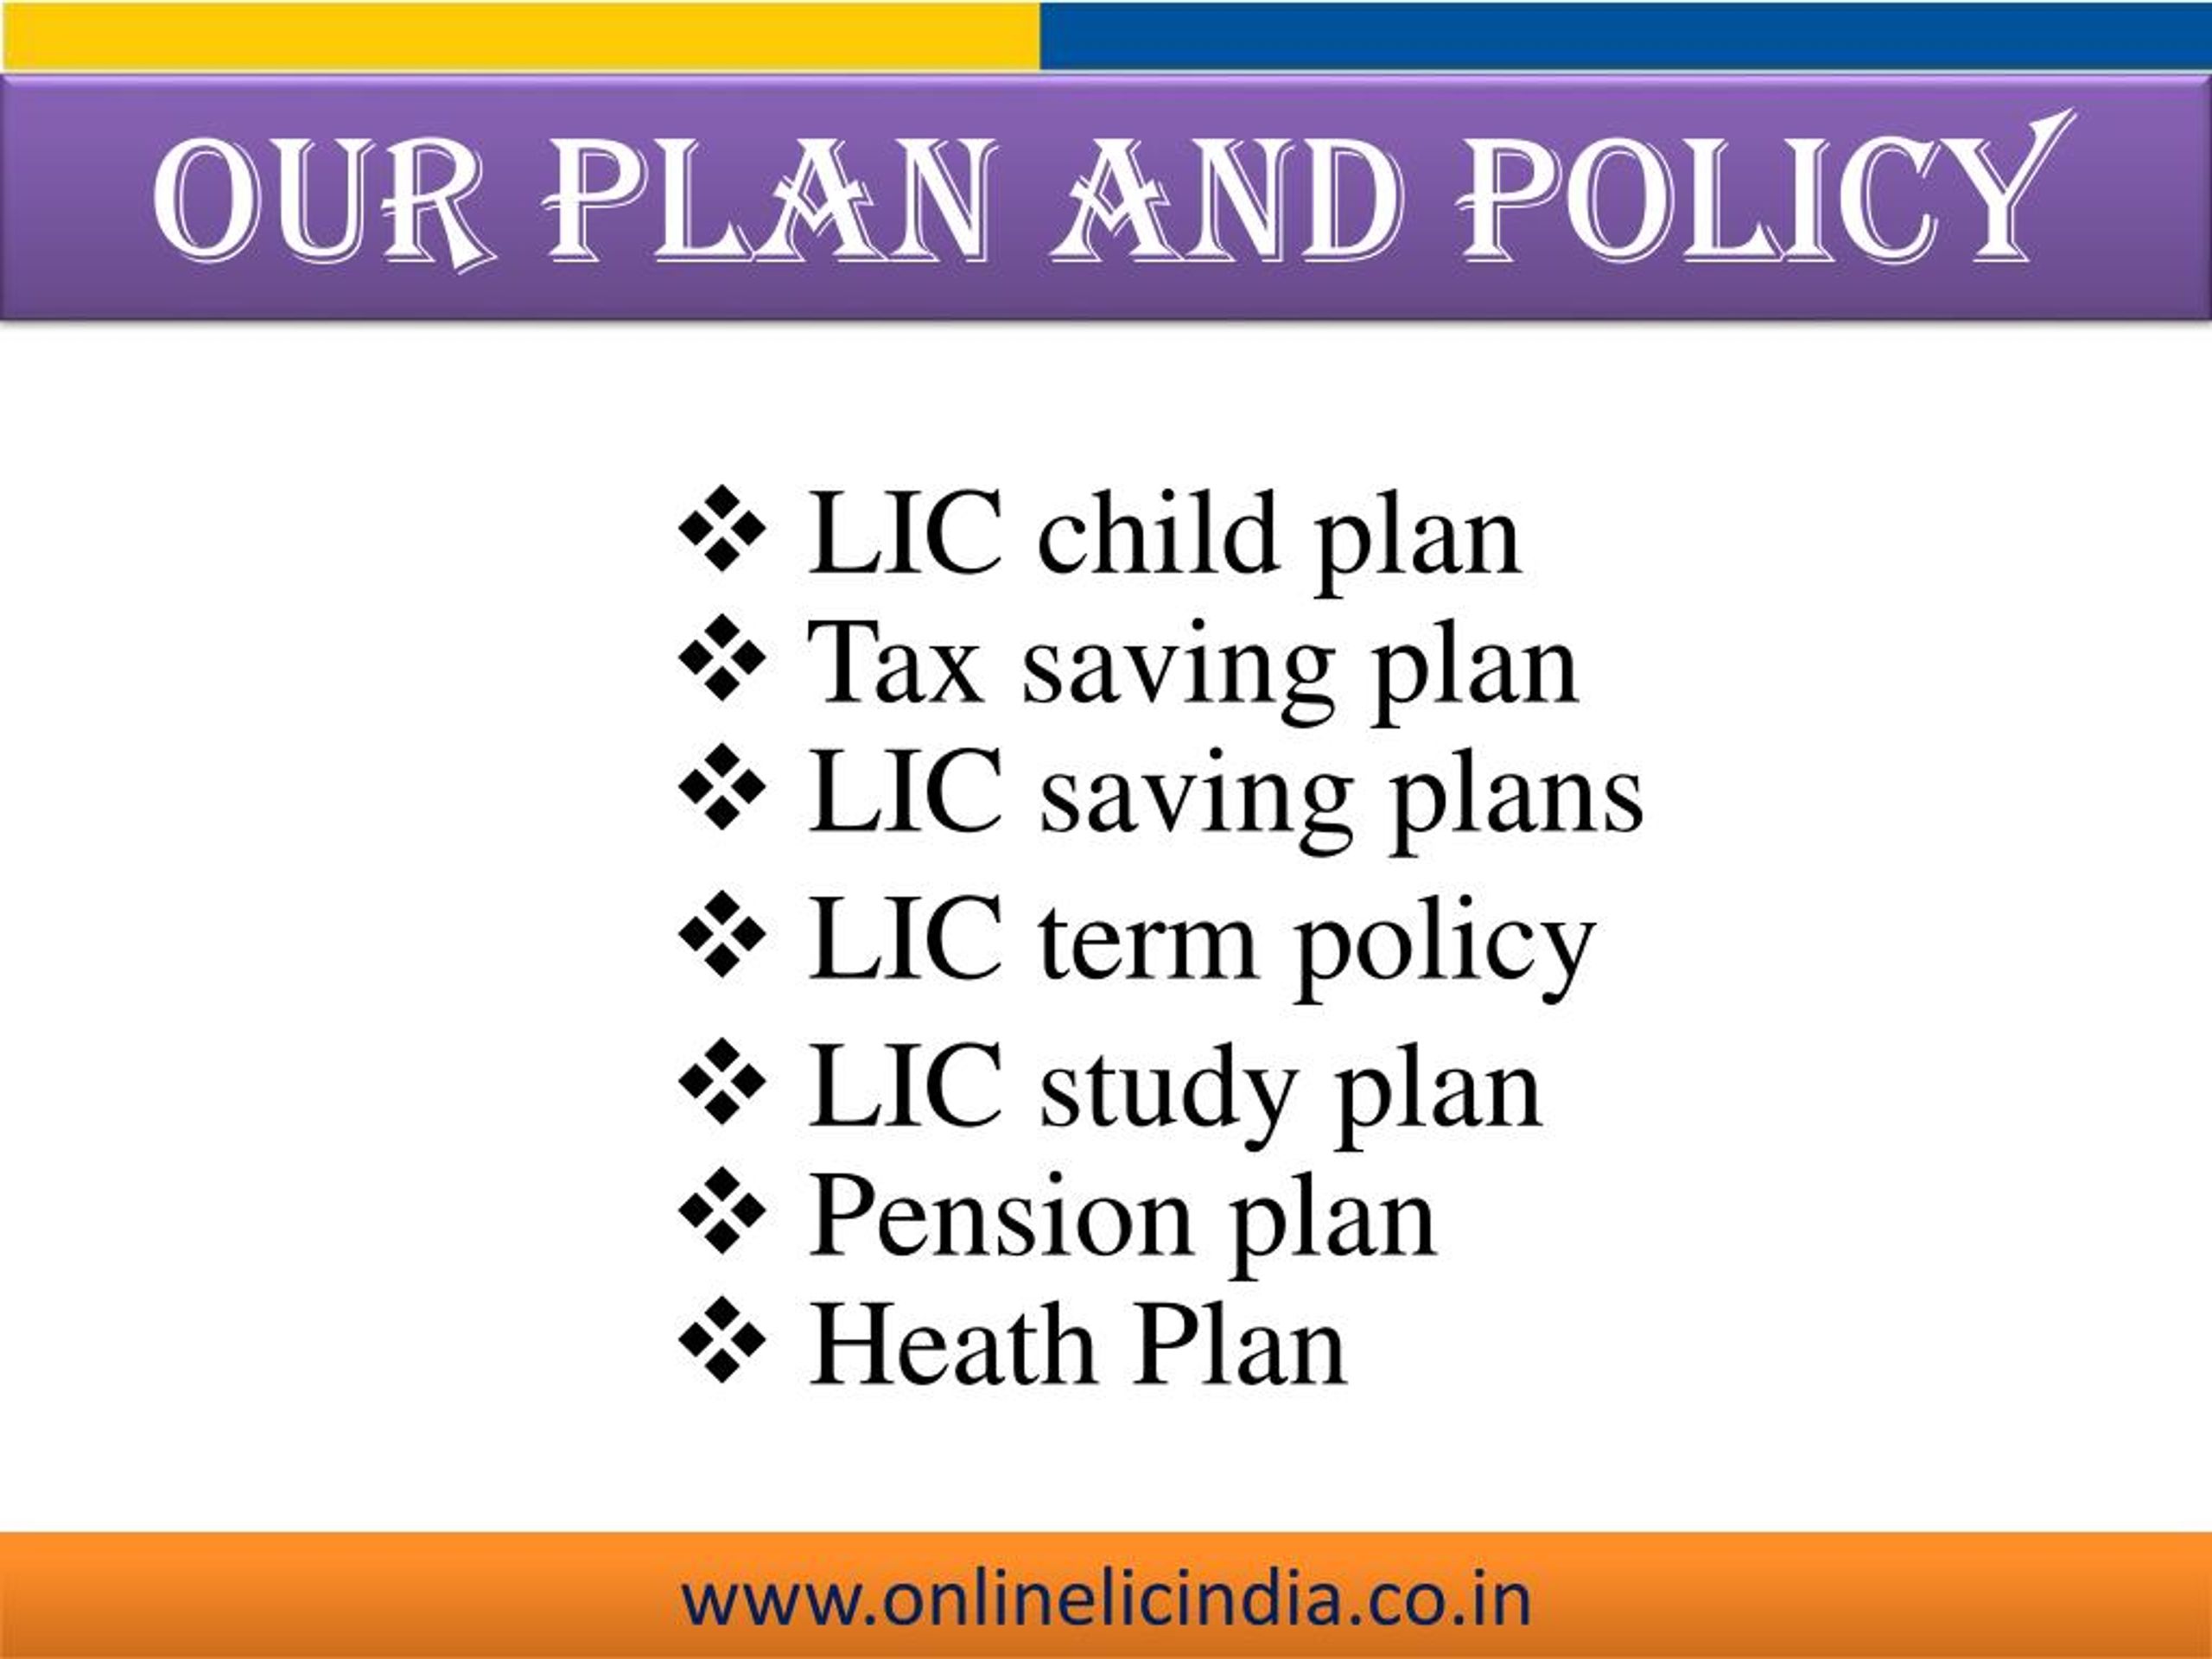 lic plan presentation pdf